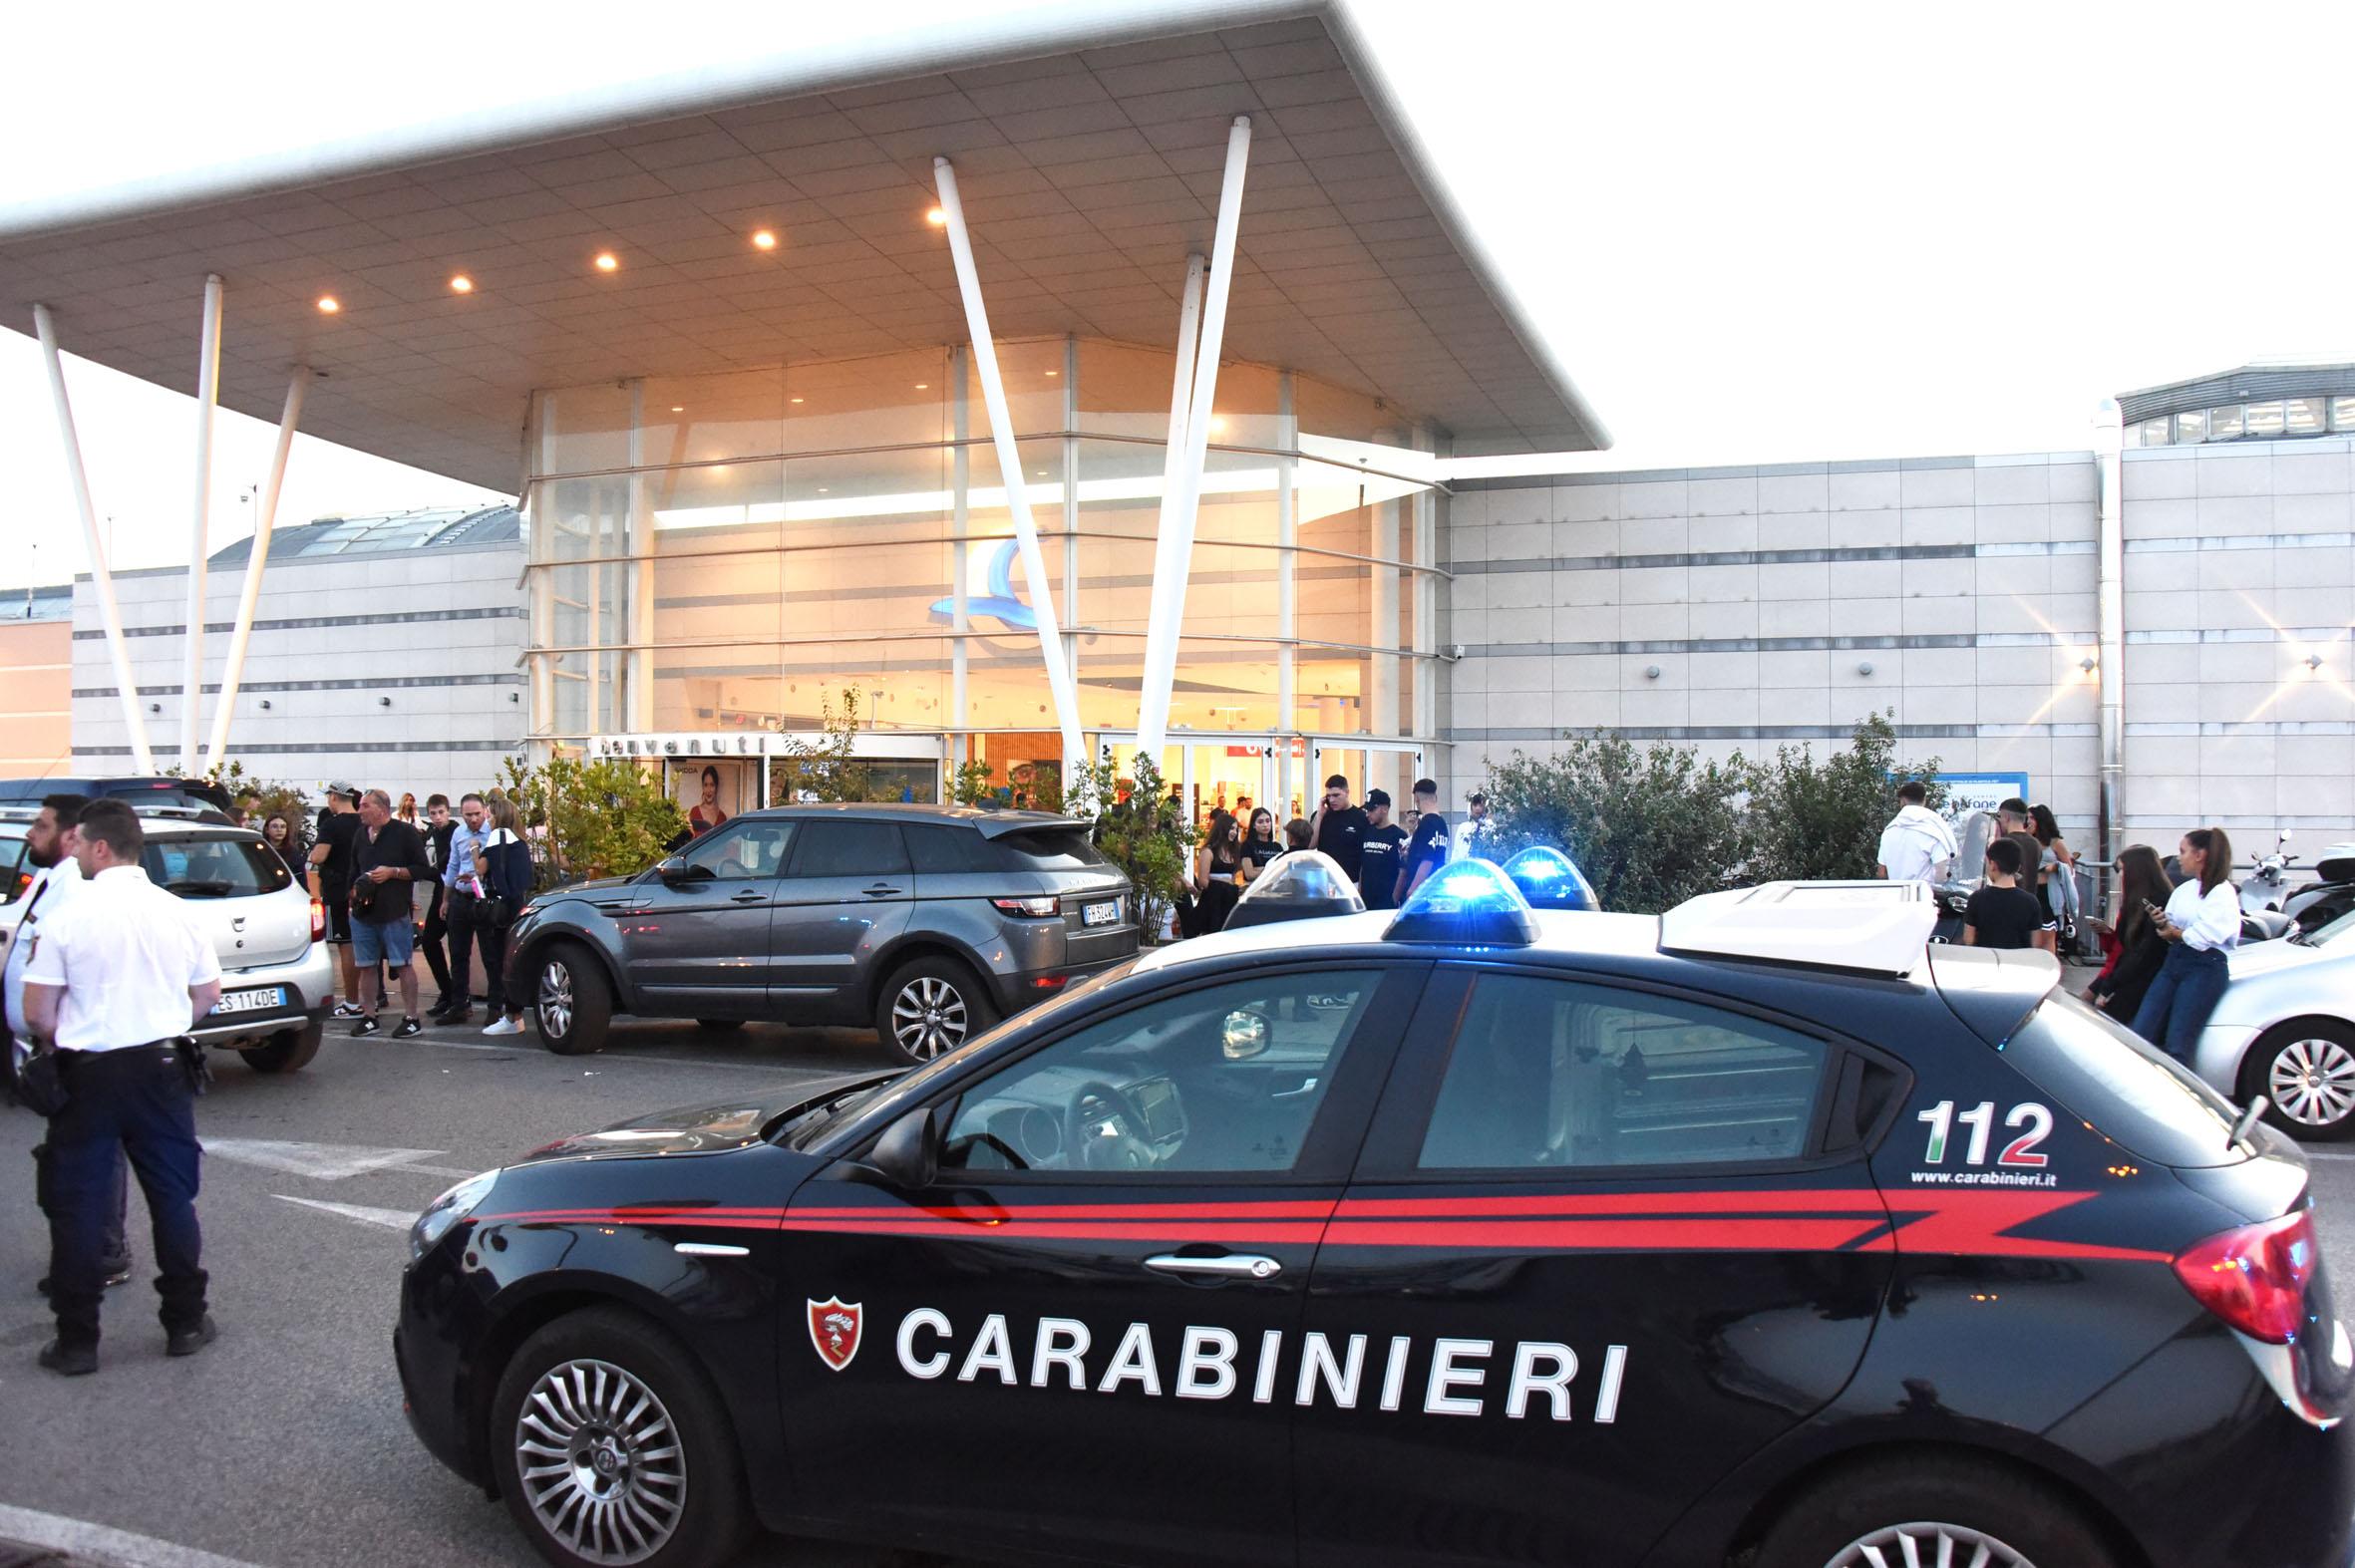 L'arrivo dei carabinieri al centro commerciale Le Befane (foto Migliorini)